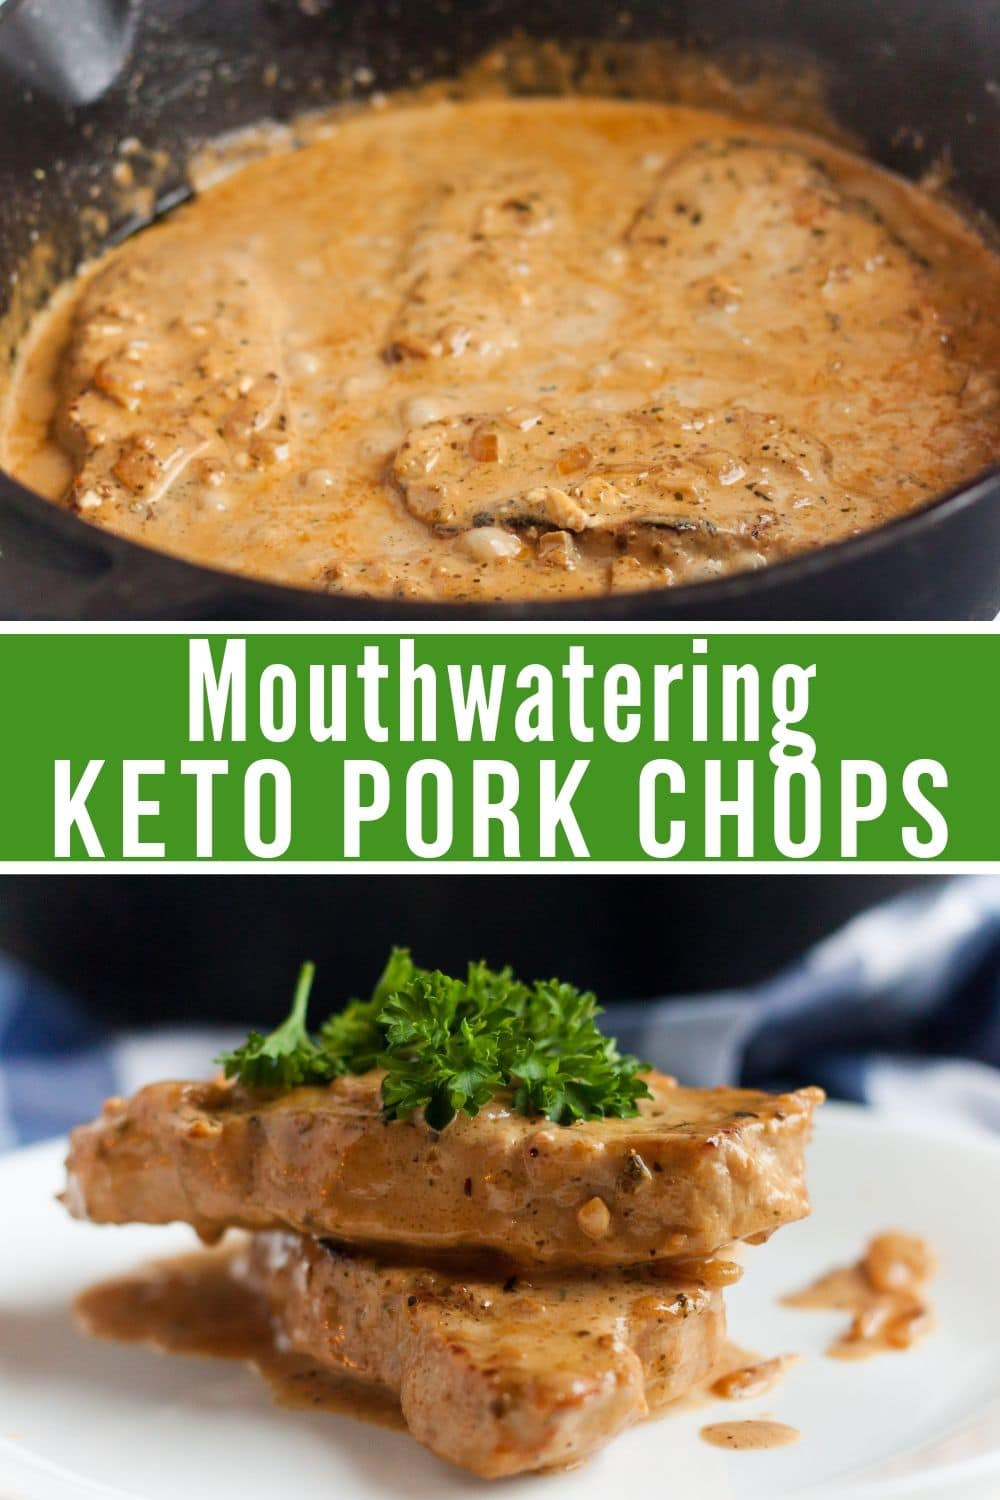 Keto Dinner Recipes Pork Chops
 Easy Creamy Garlic Parmesan Keto Pork Chops